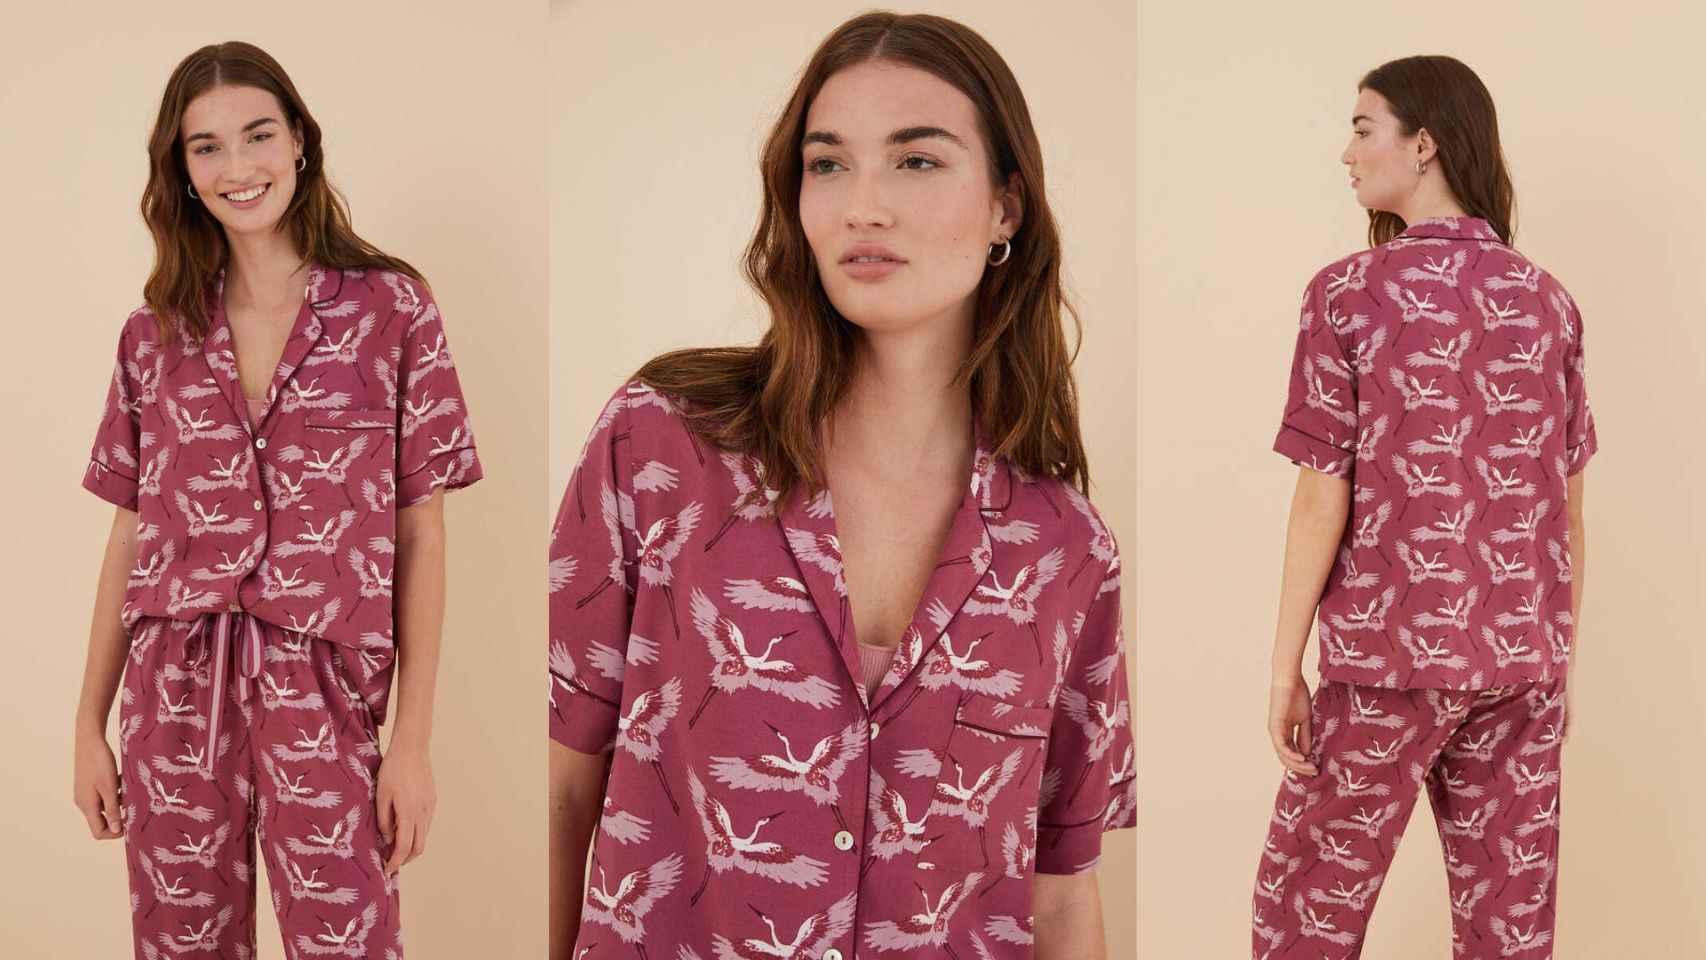 Pijama camisero con estampado de garzas (17,99€)